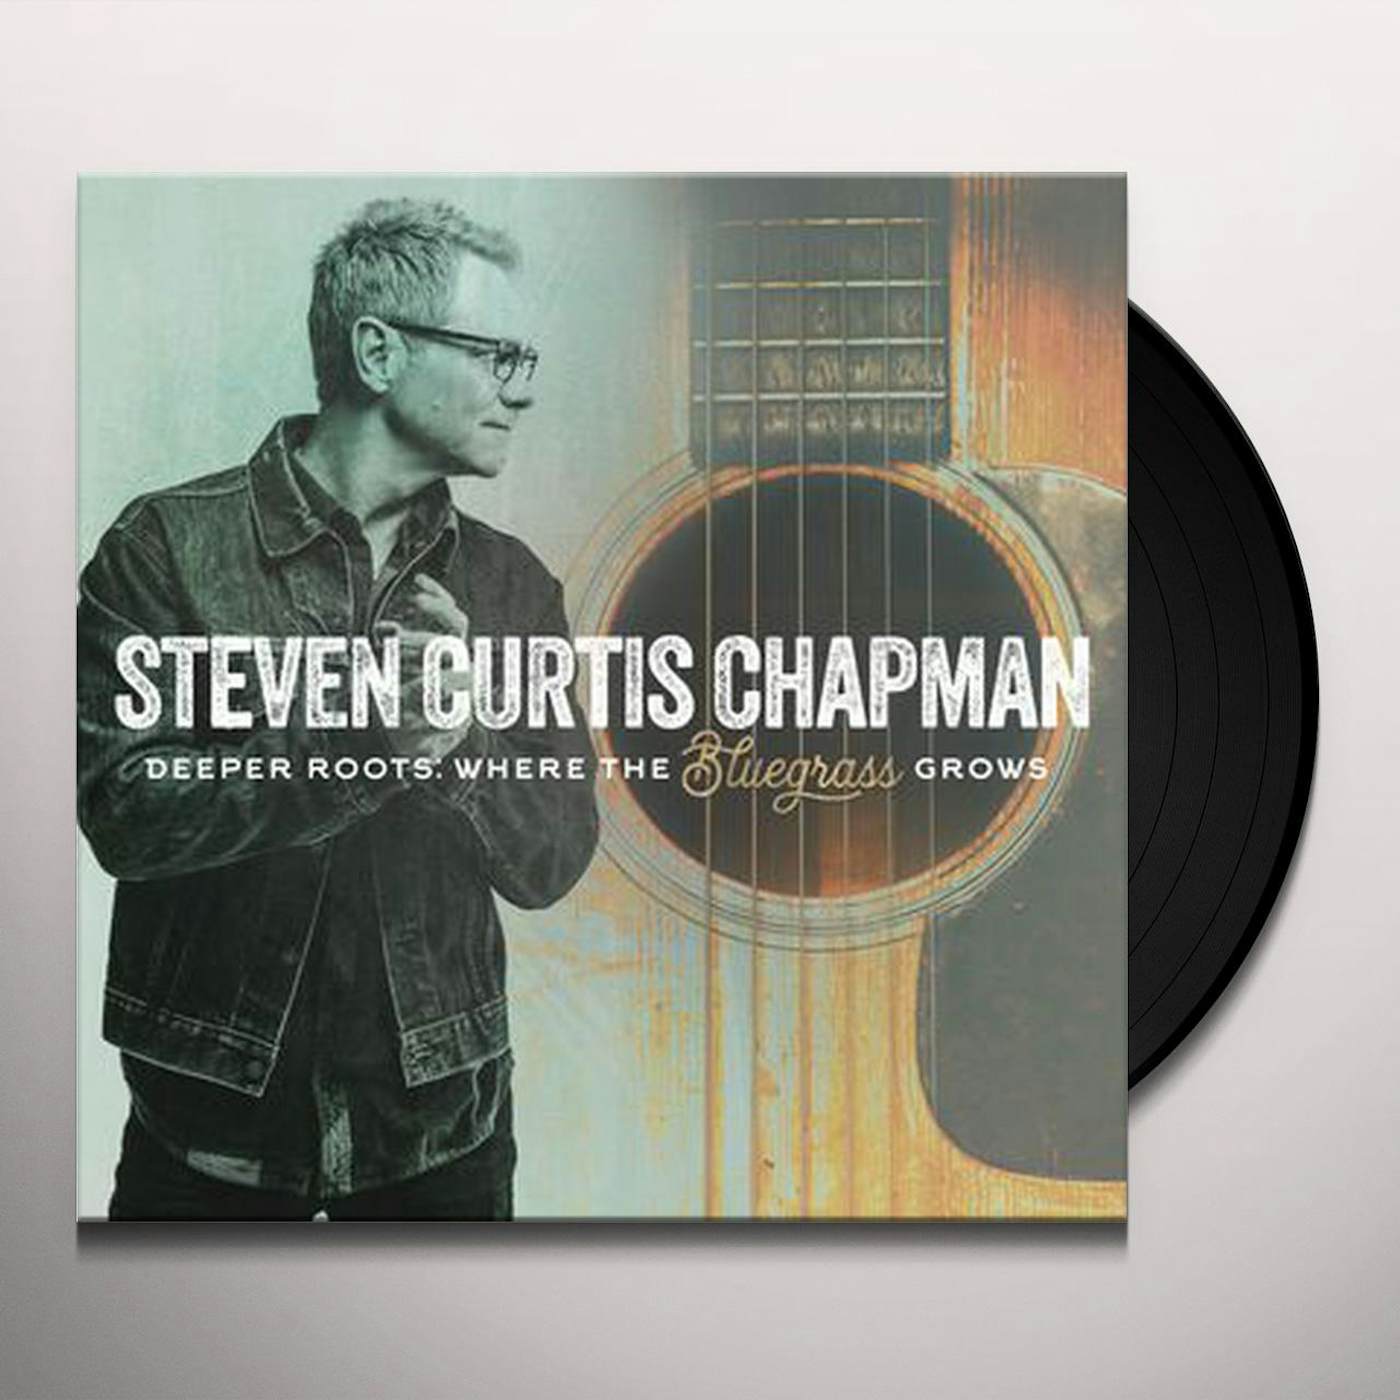 Steven Curtis Chapman Deeper Roots: Where the Bluegrass Grows Vinyl Record